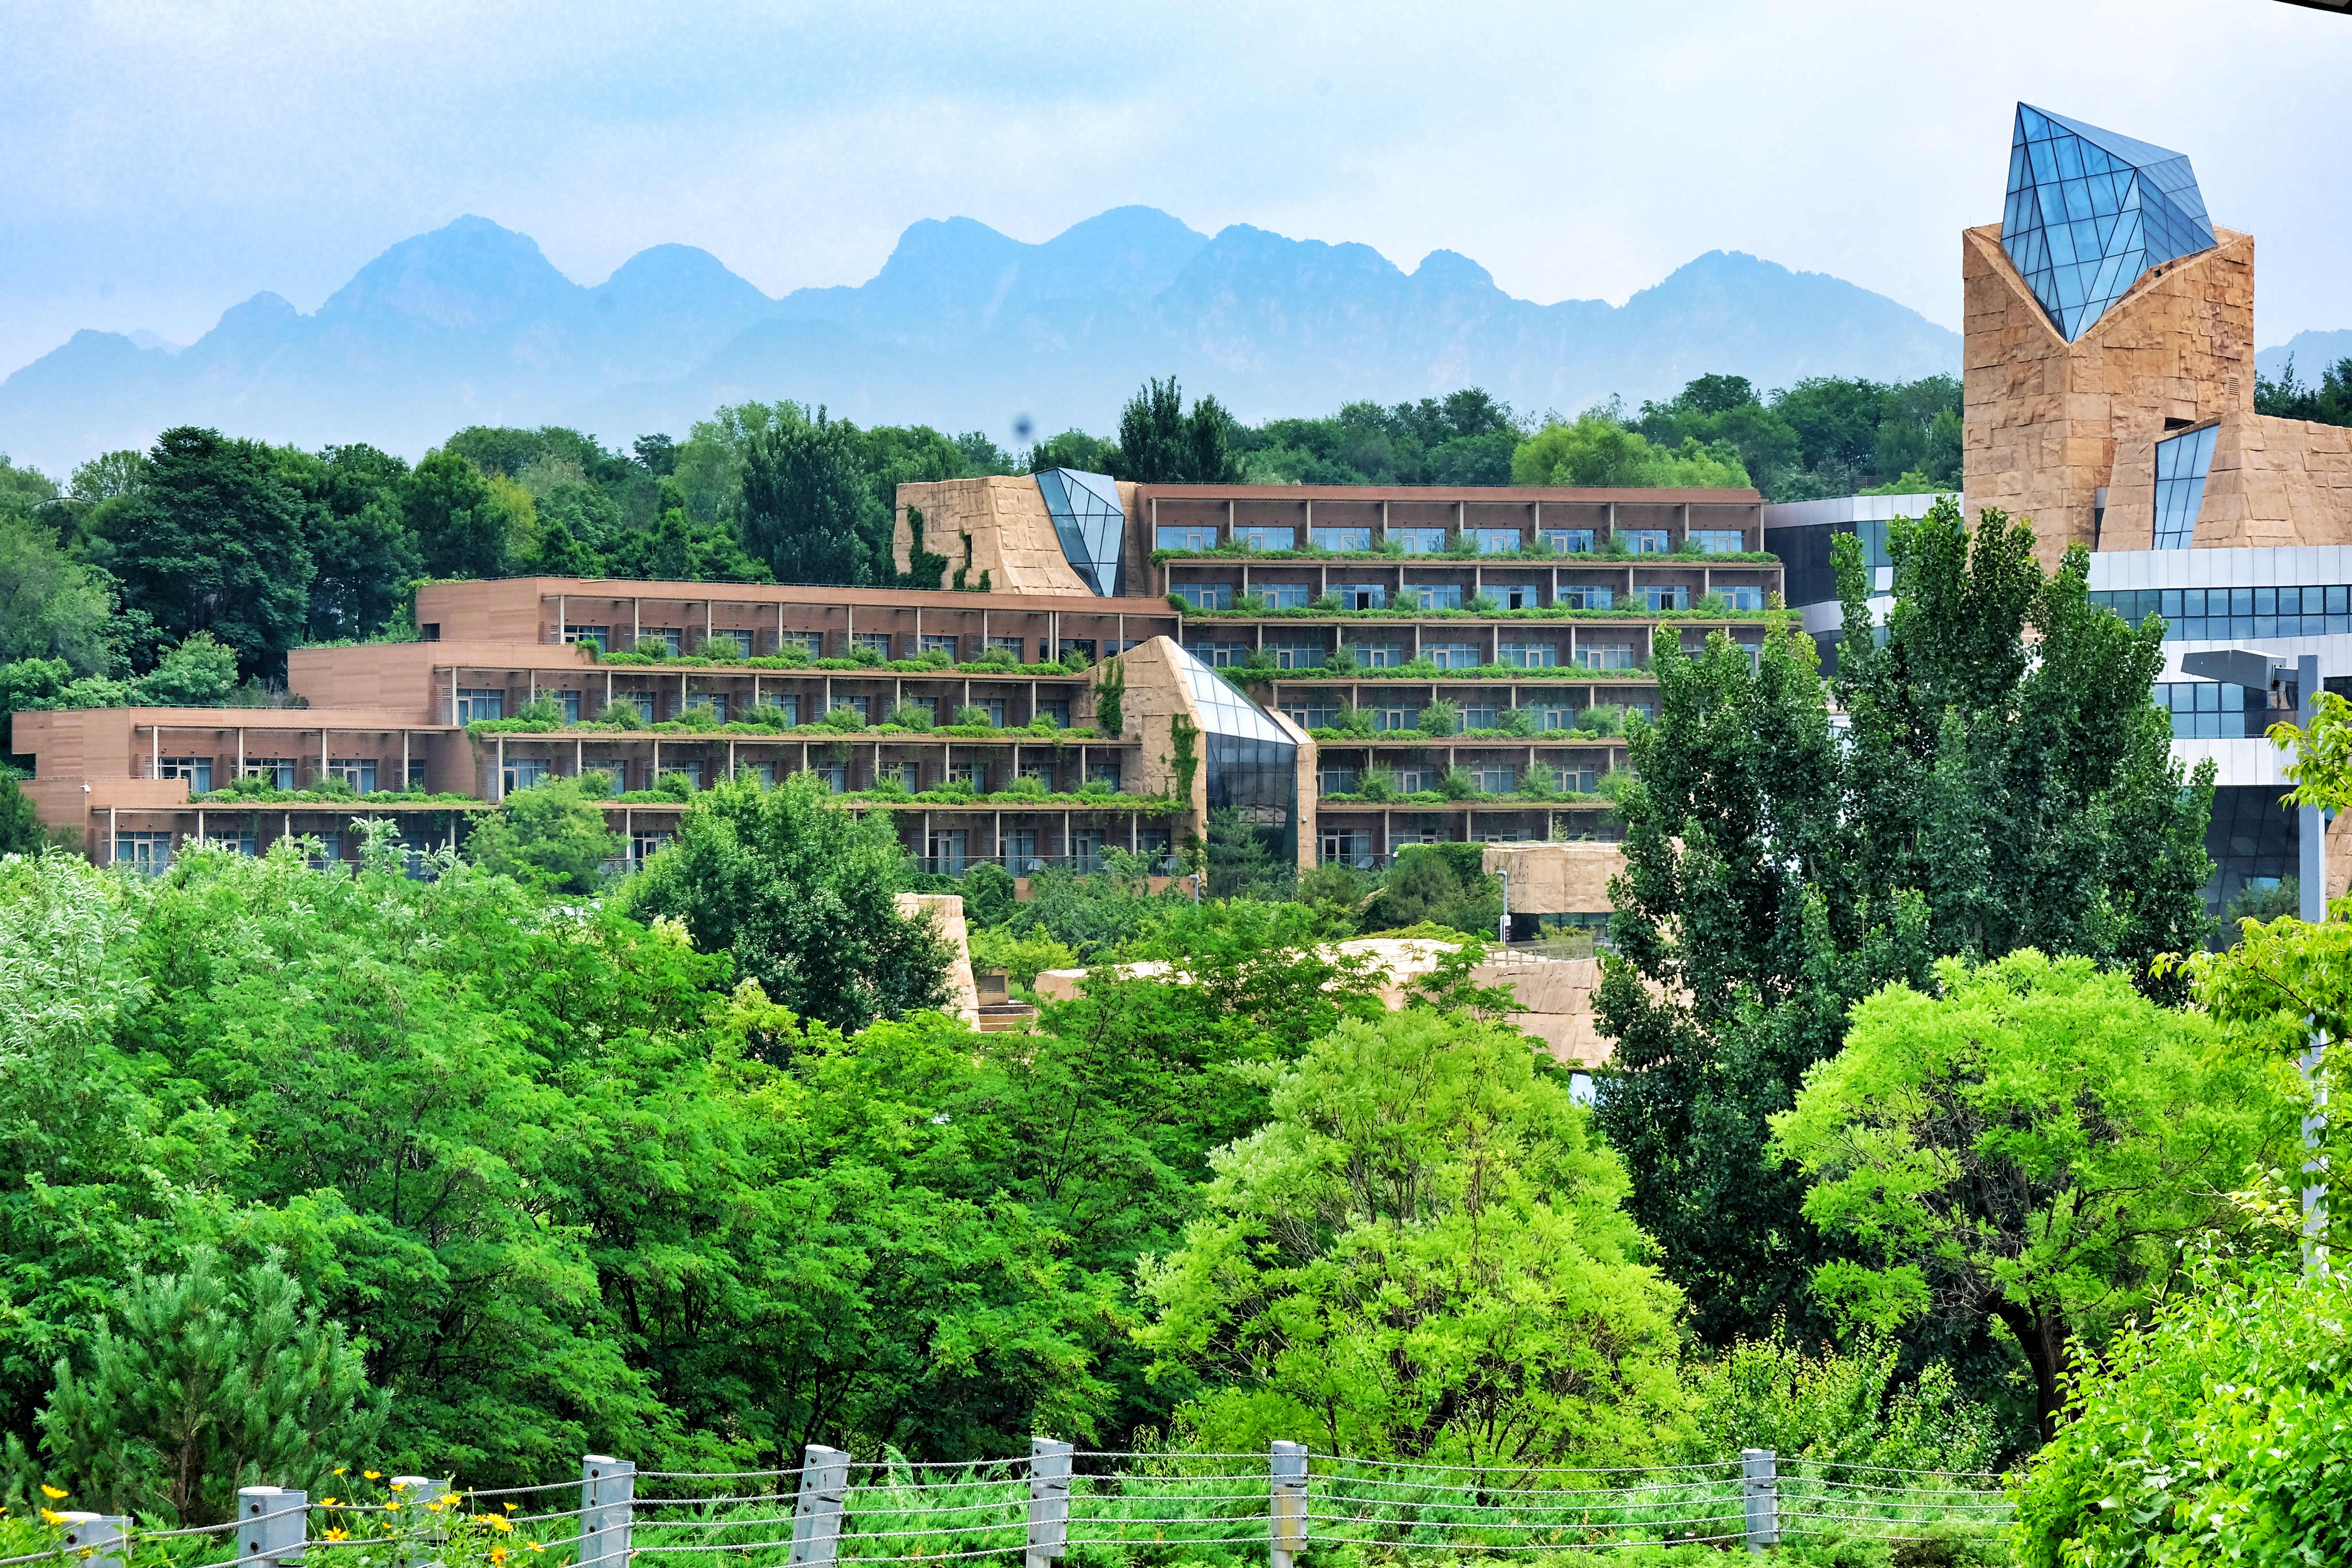 京郊小瑞士 镶嵌于平谷山水间的宝藏度假酒店